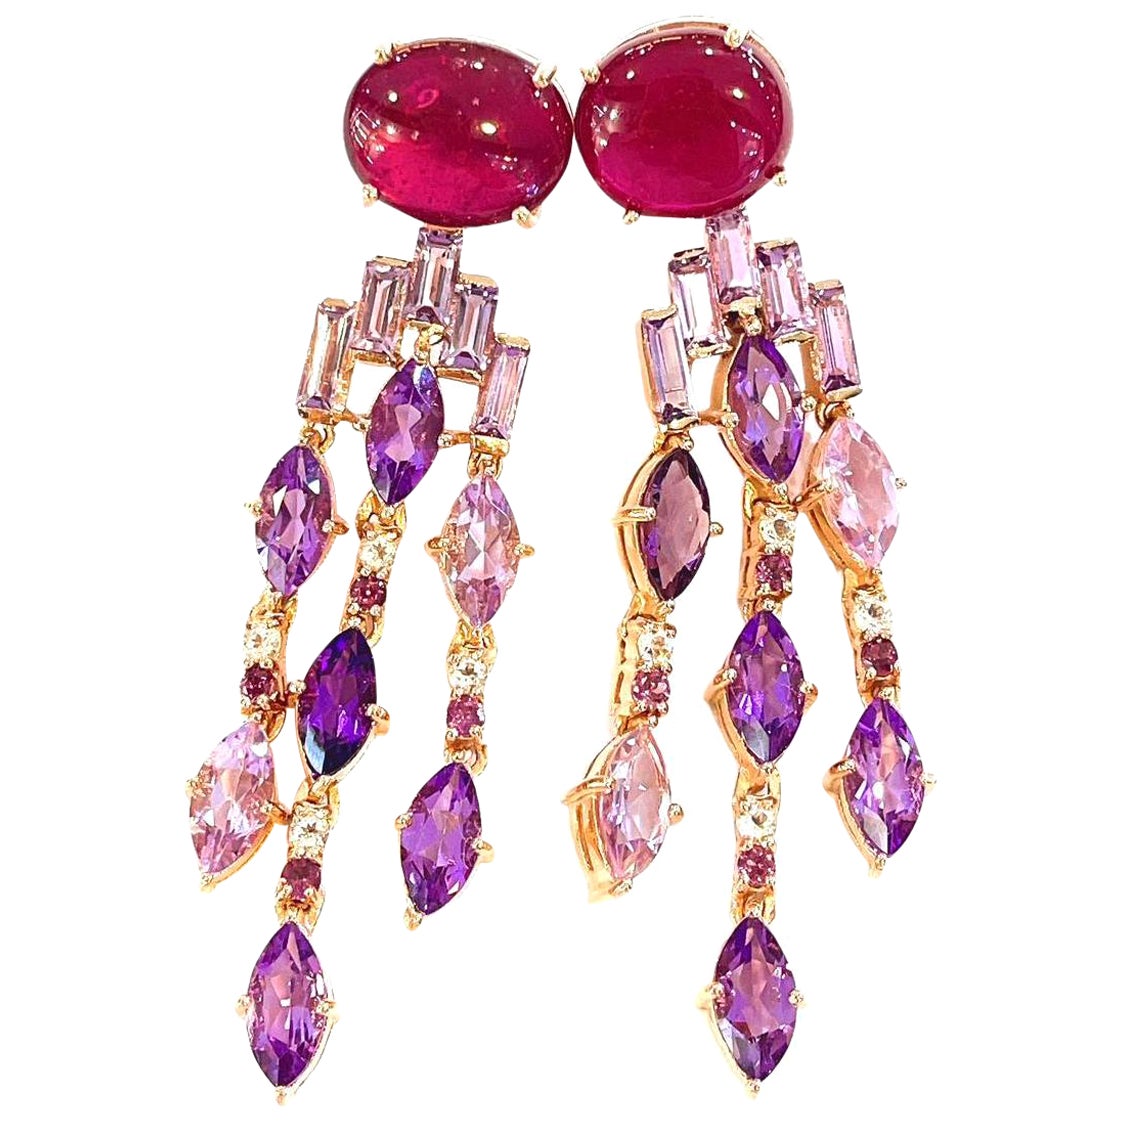 Bochic “Capri” Red Ruby & Purple Amethyst Earrings Set in 22k Gold & Silver 